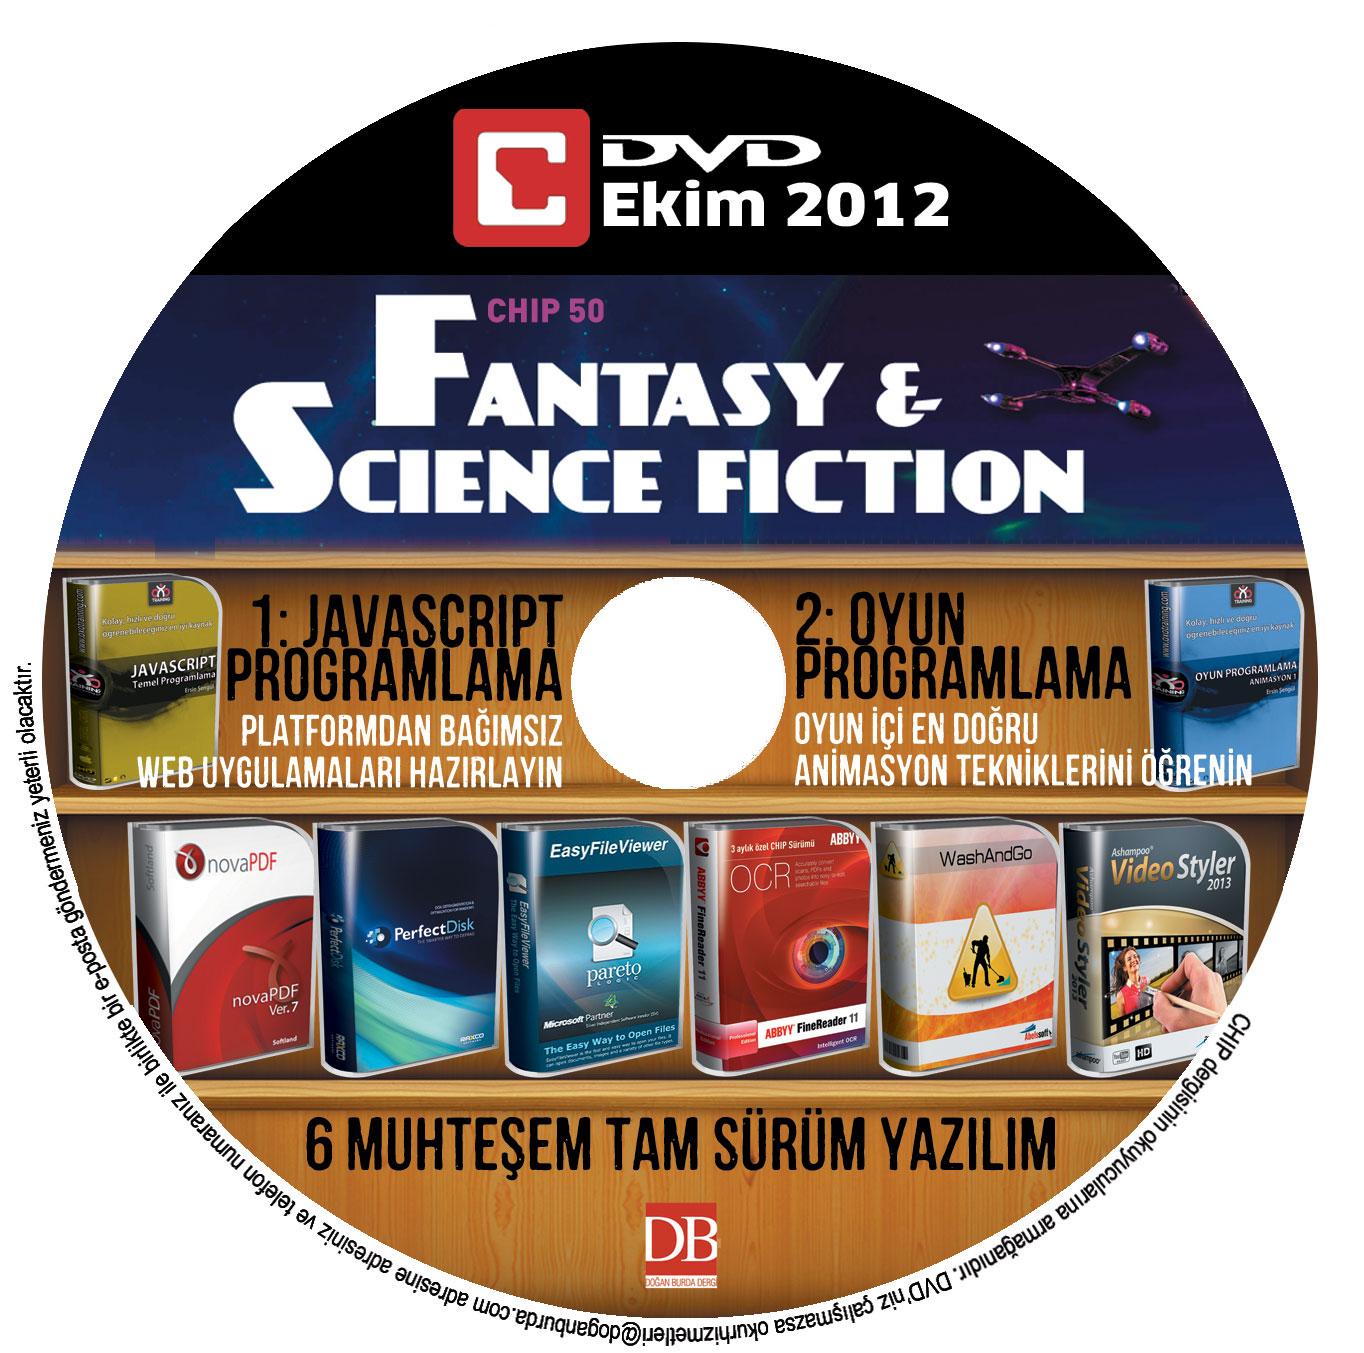 DVD Ekim 2012